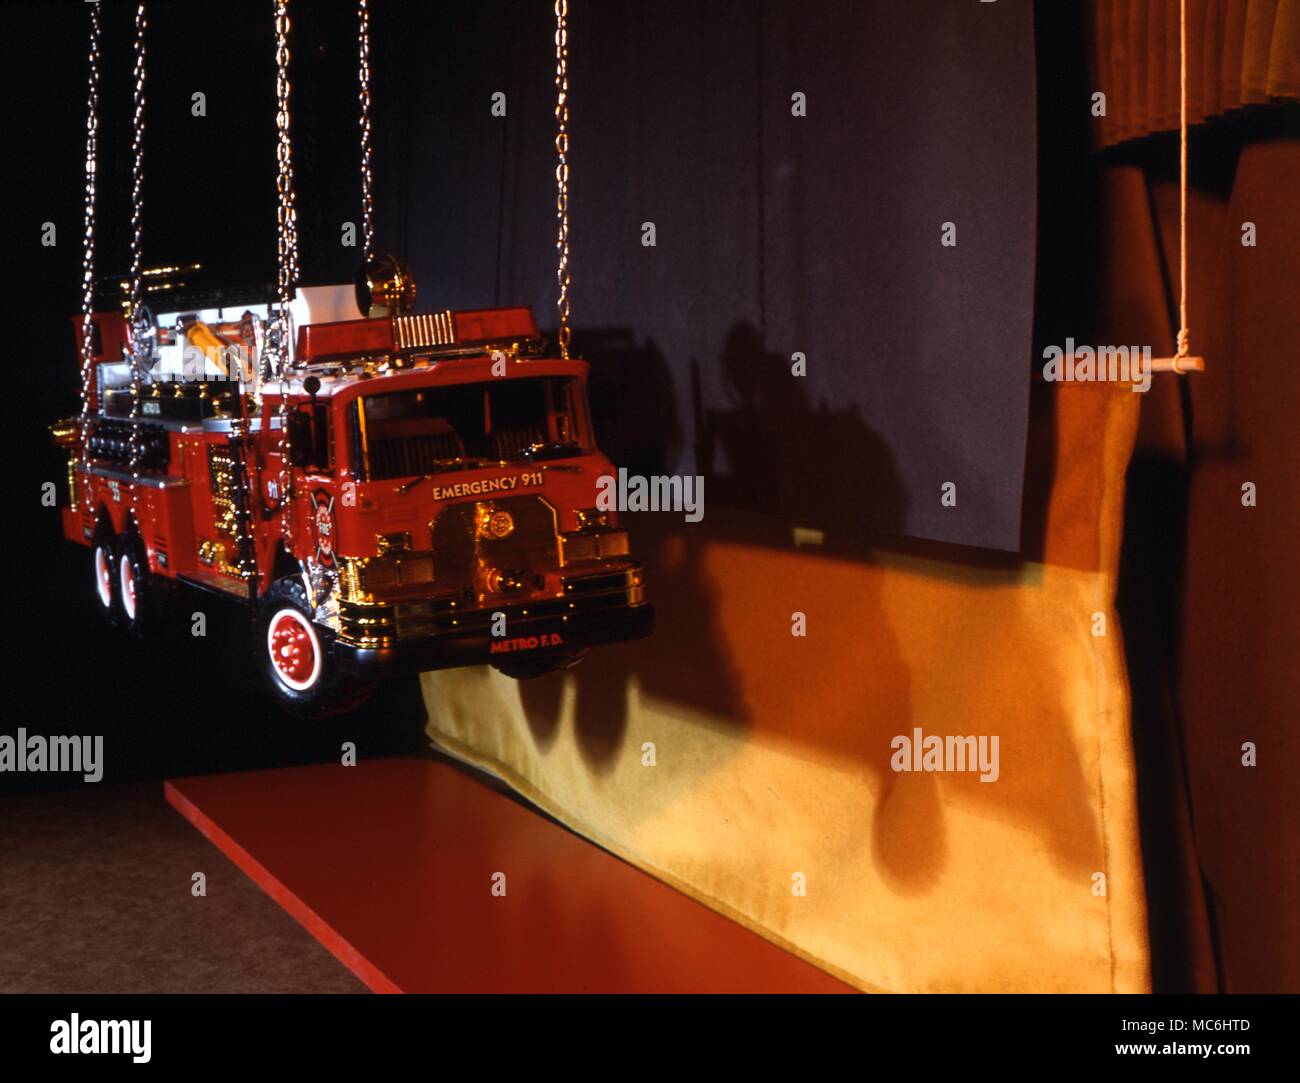 Verschwinden Fire Engine Trick. Dieses Bild zeigt, was der Magier sieht - Der schwarze Vorhang versteckt, in dem die Feuerwehr mit einem Kran angehoben werden. Stockfoto